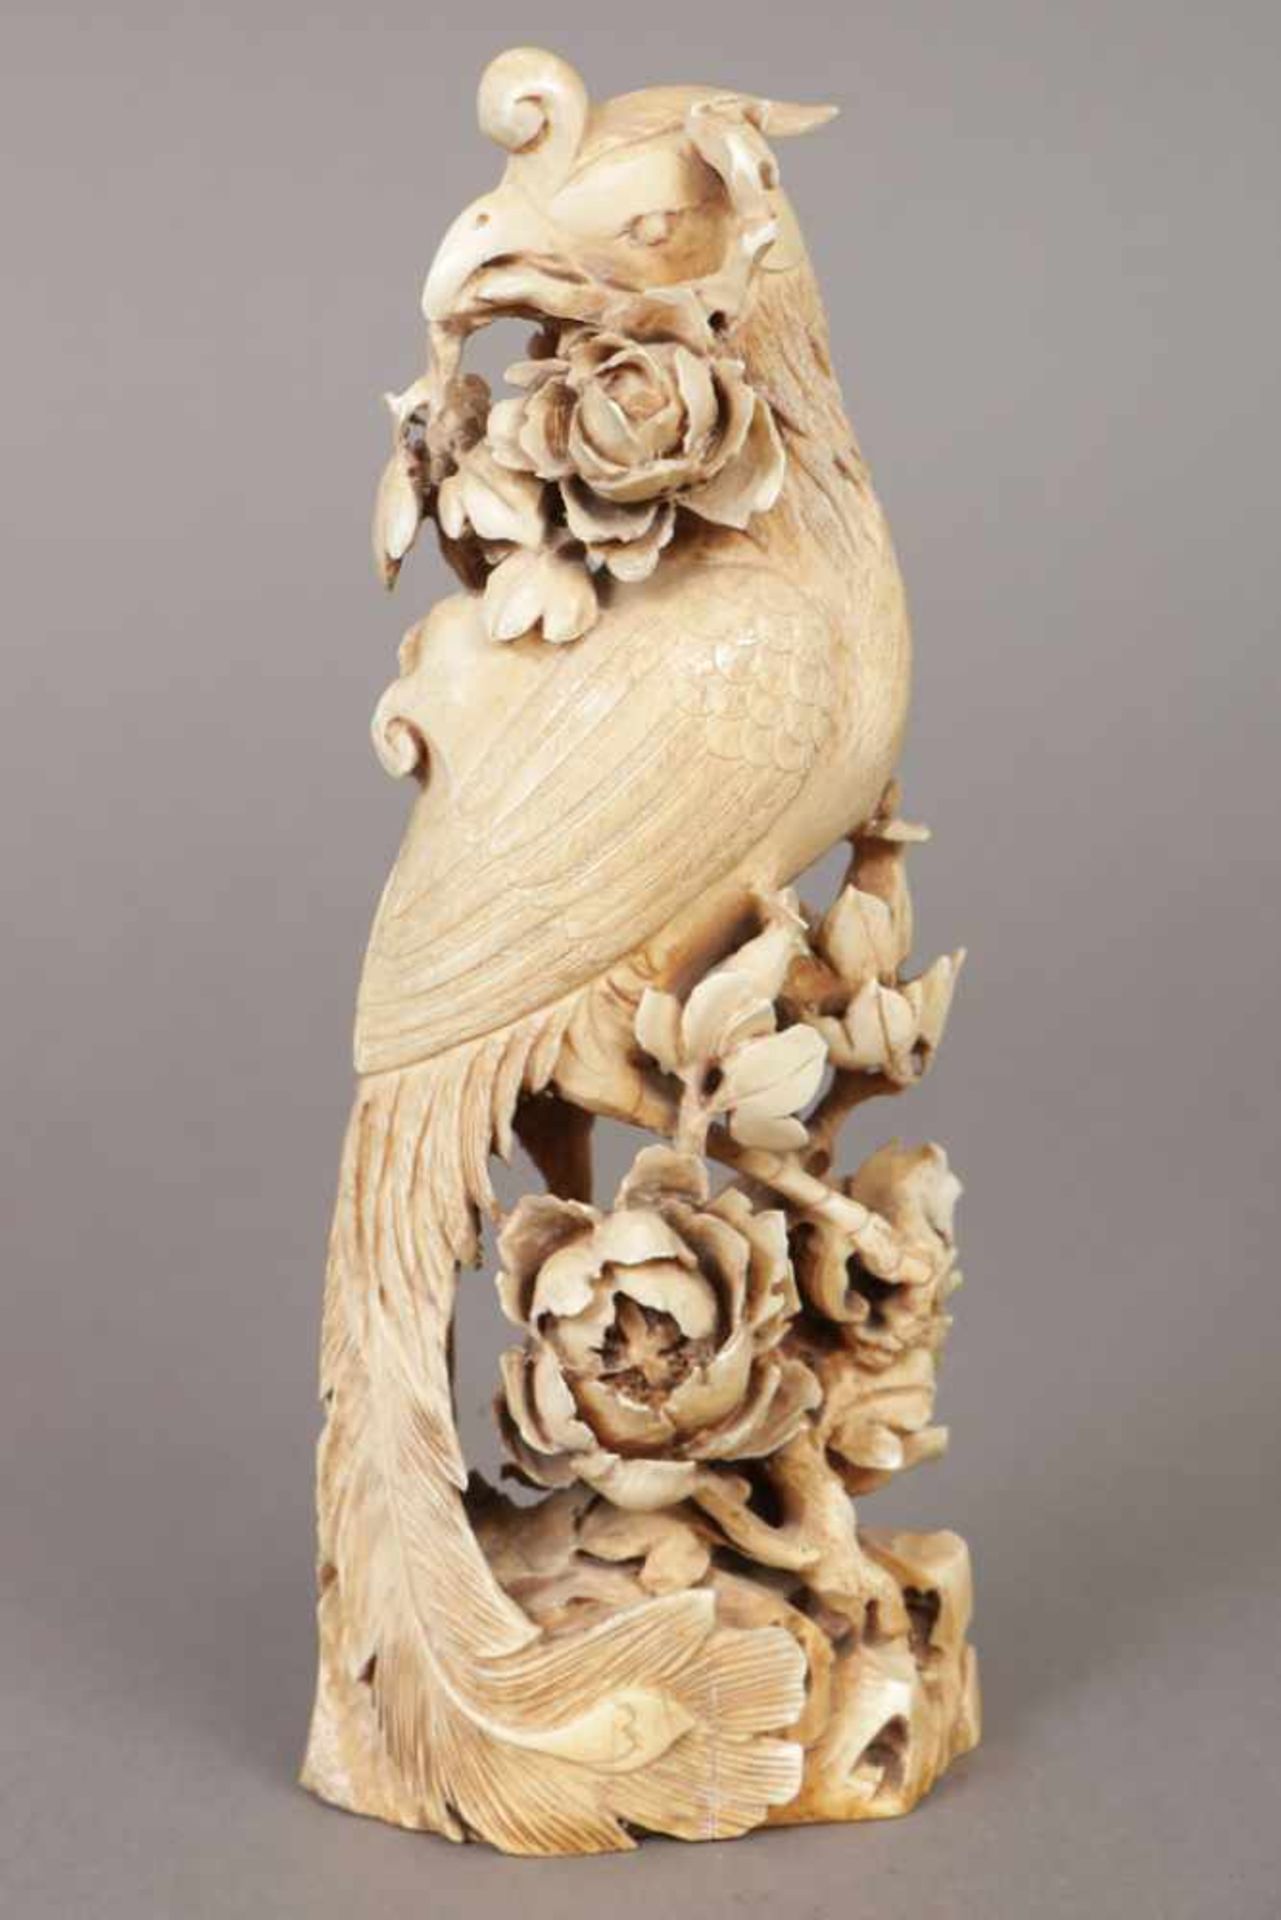 Chinesische Elfenbeinschnitzerei ¨Phönix¨ (auf Geäst sitzend) wohl um 1900, H ca. 20cm, Haarriss